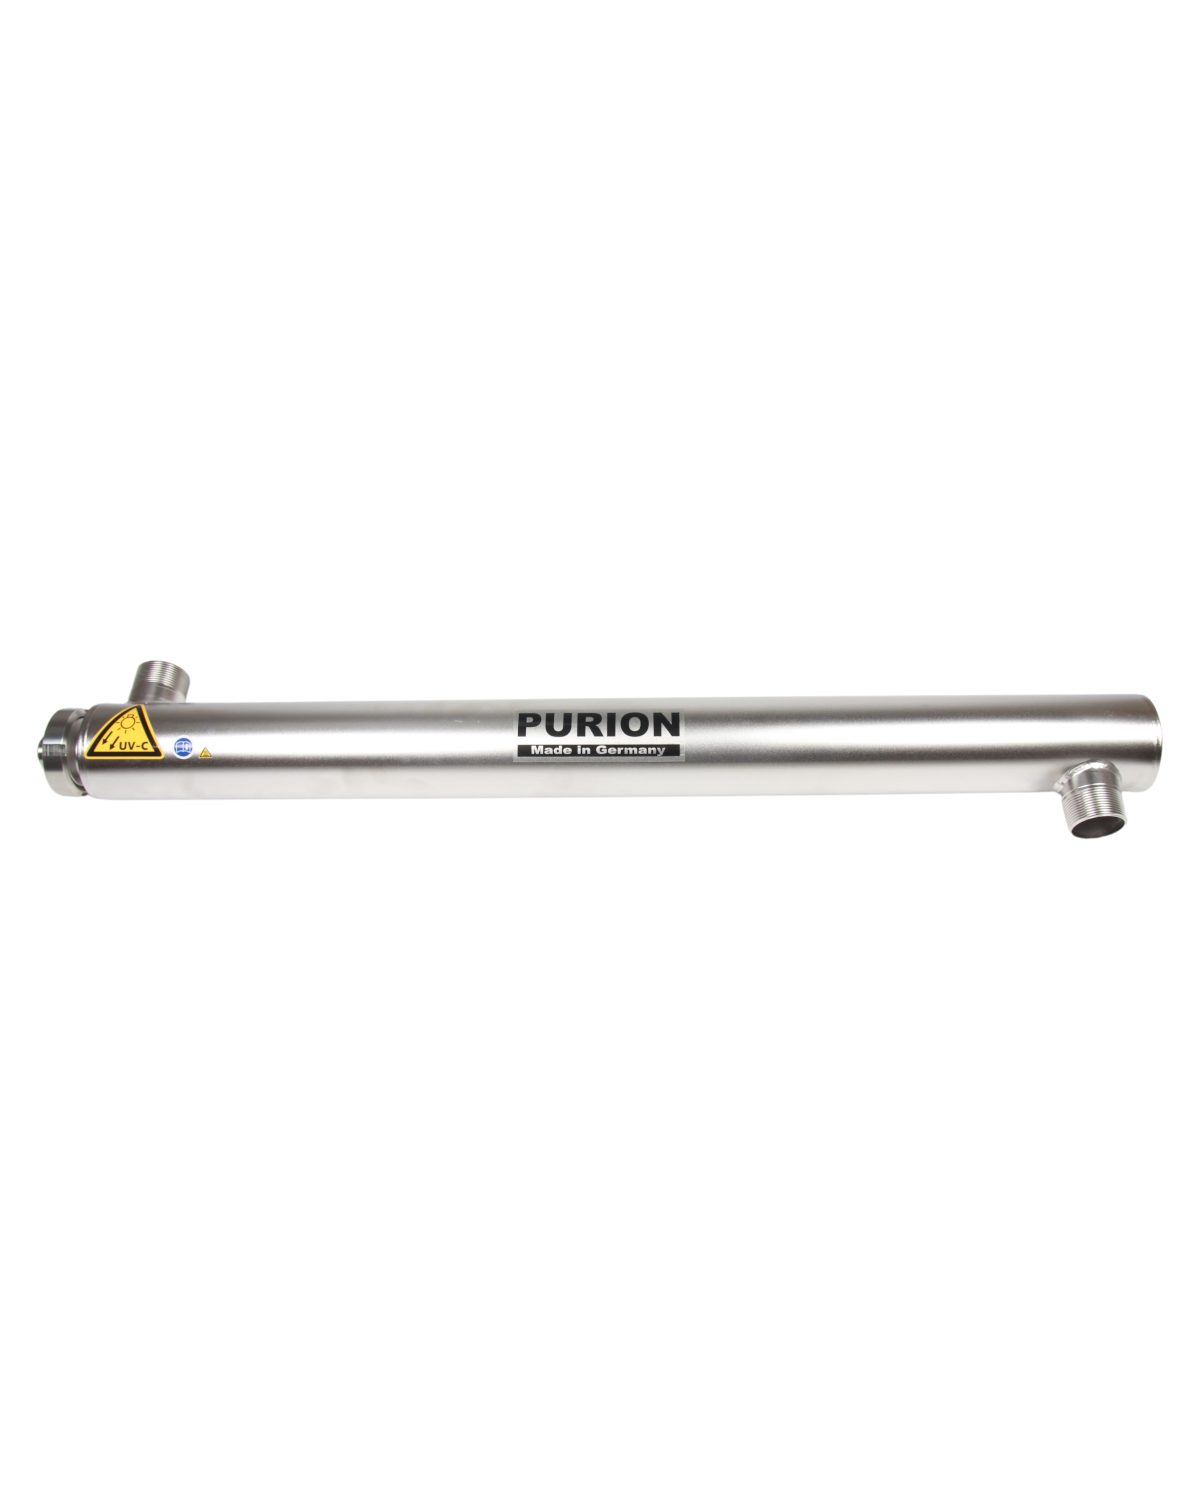 Ein PURION 2501 OPD Extra Edelstahlrohr mit dem Wort Furion darauf, perfekt für die UV-C-Desinfektion, hergestellt von der PURION GmbH.